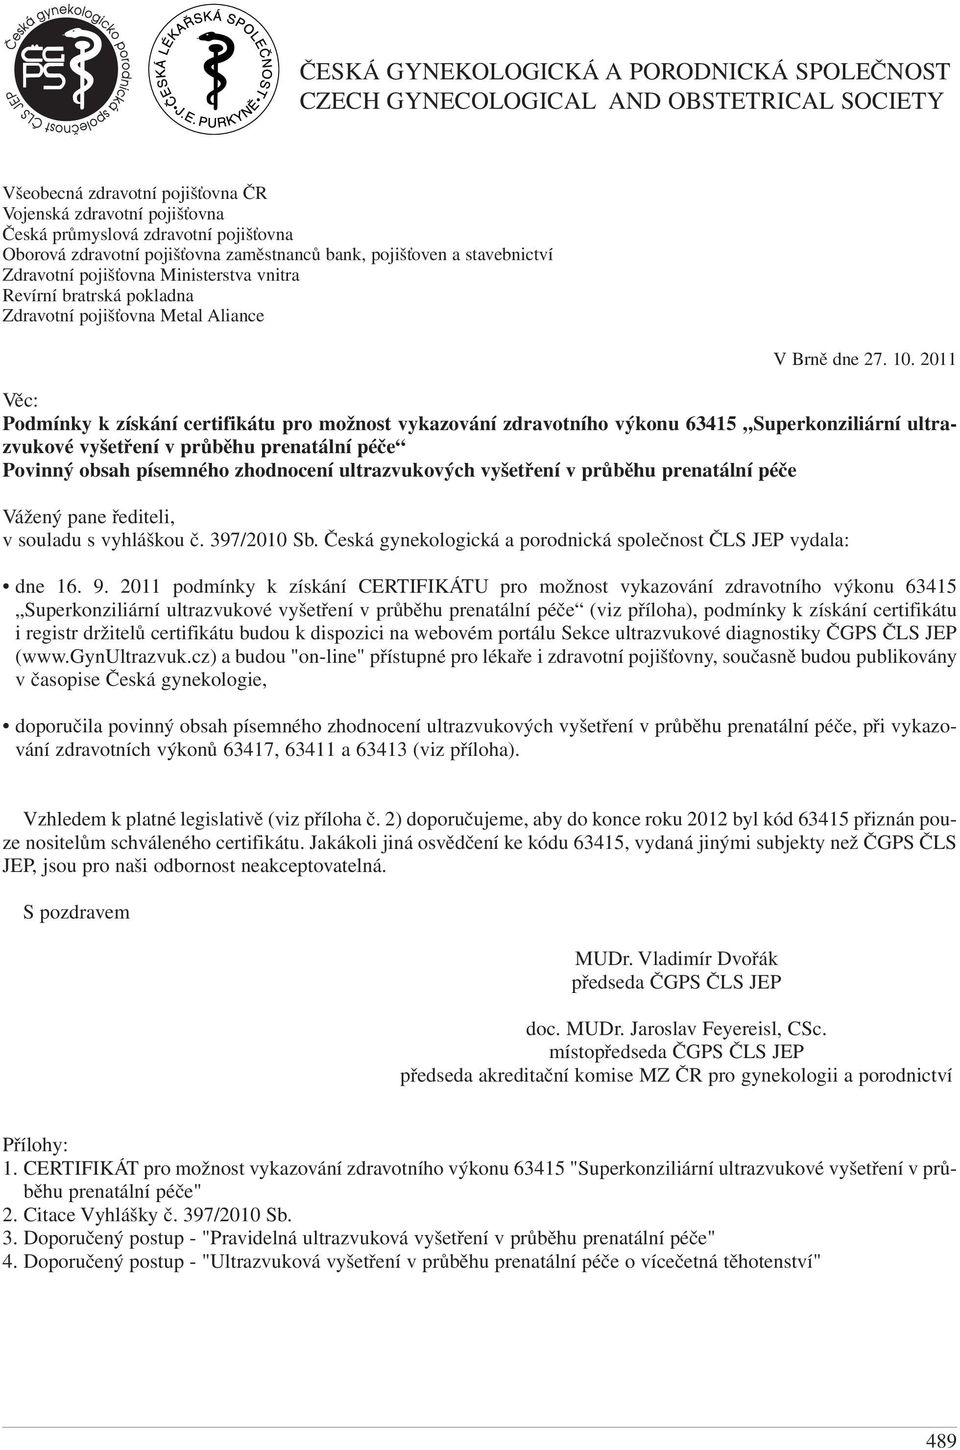 certifikátu pro možnost vykazování zdravotního výkonu 63415 Superkonziliární ultrazvukové vyšetření v průběhu prenatální péče Povinný obsah písemného zhodnocení ultrazvukových vyšetření v průběhu